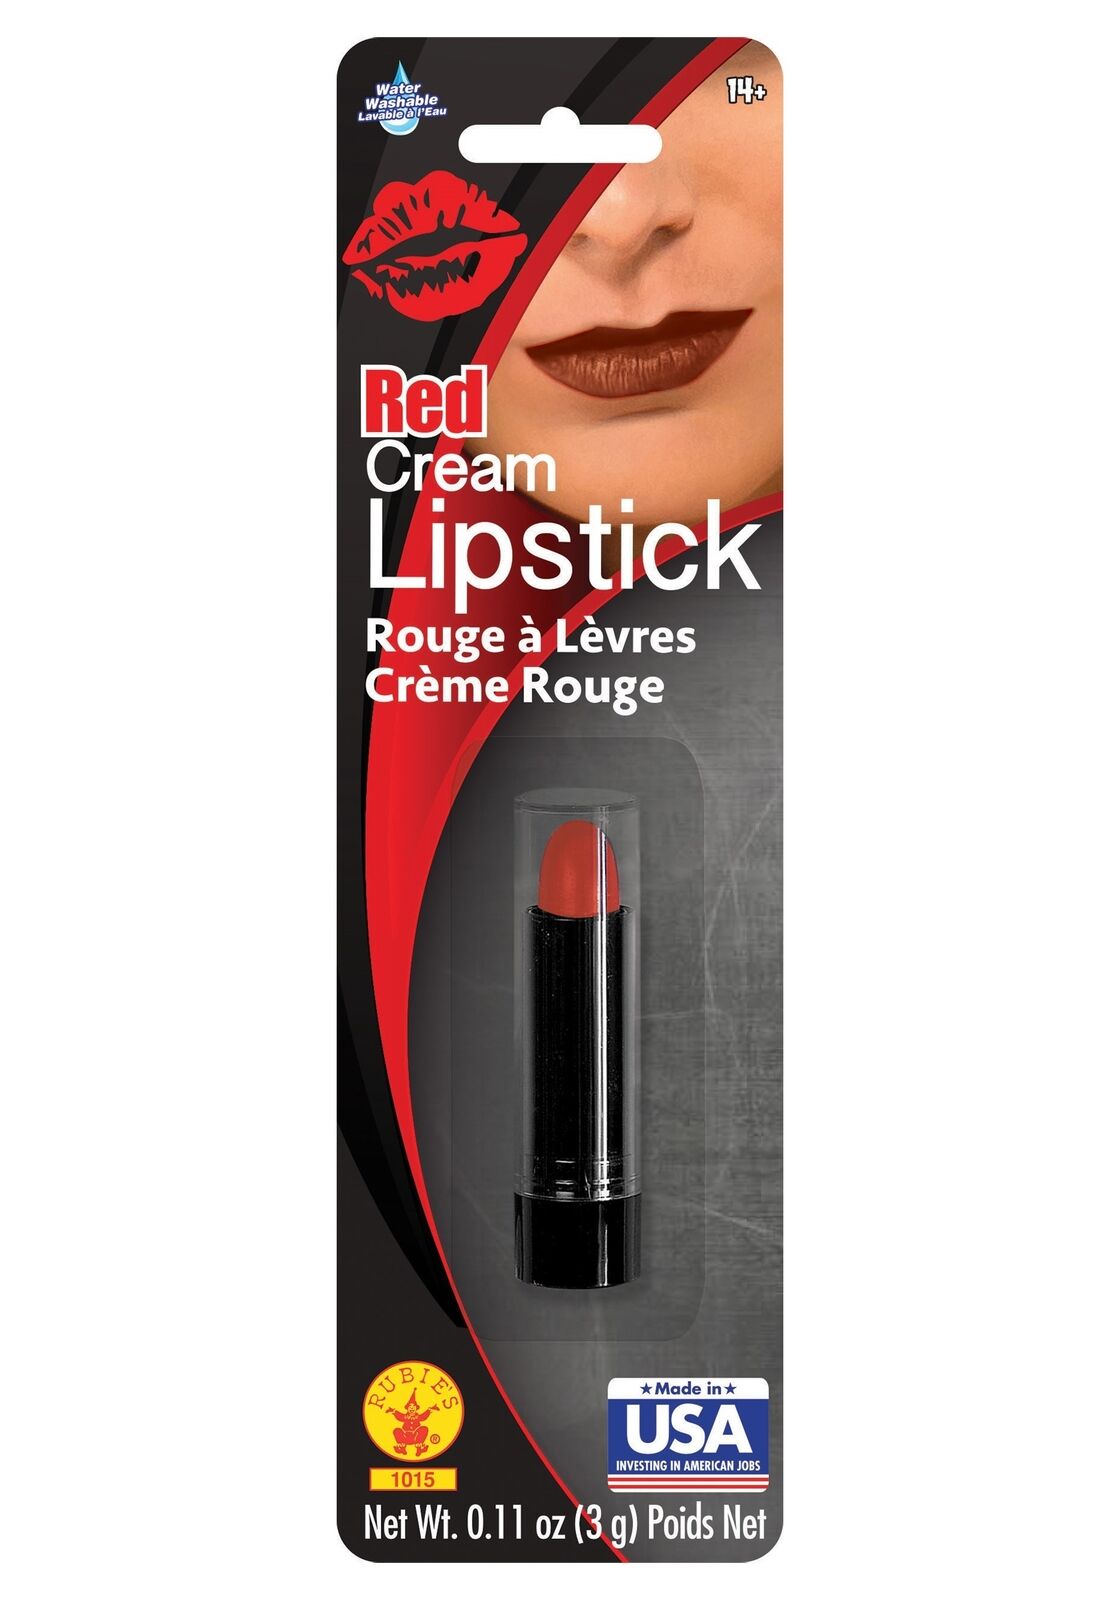 Red Cream Lipstick